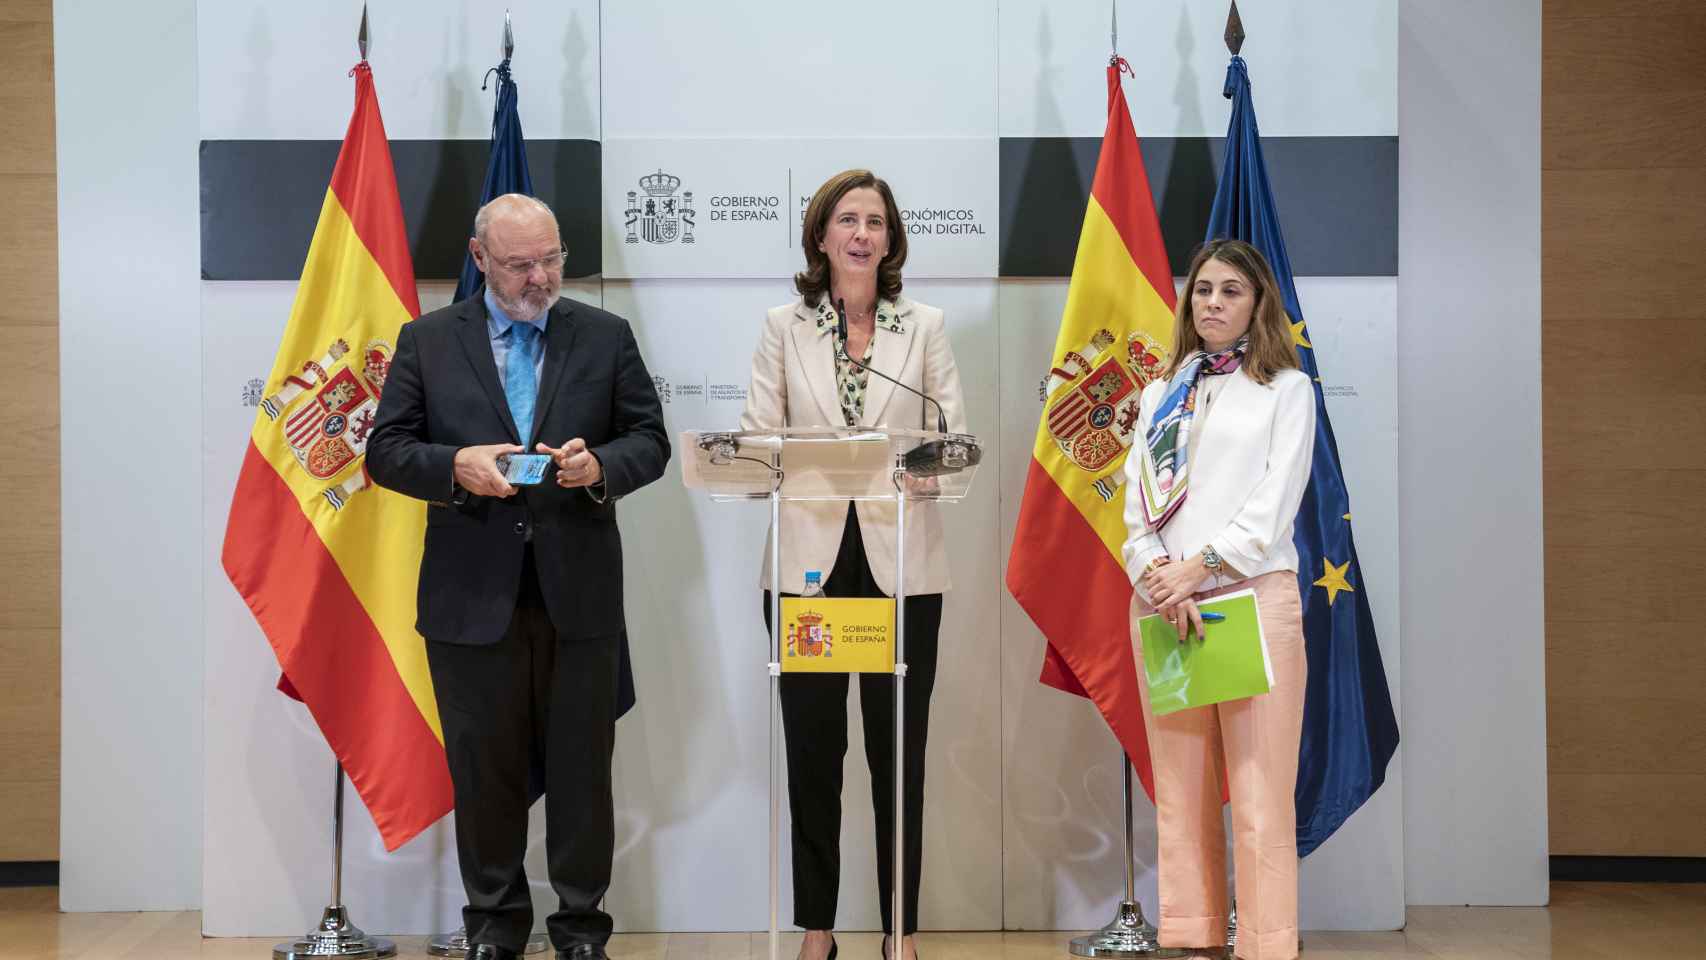 José María Méndez, director general de CECA; Alejandra Kindelán, presidenta de AEB, y Cristina Freijanes, secretaria general de Unacc, en la rueda de prensa posterior a la reunión con la vicepresidenta Nadia Calviño.